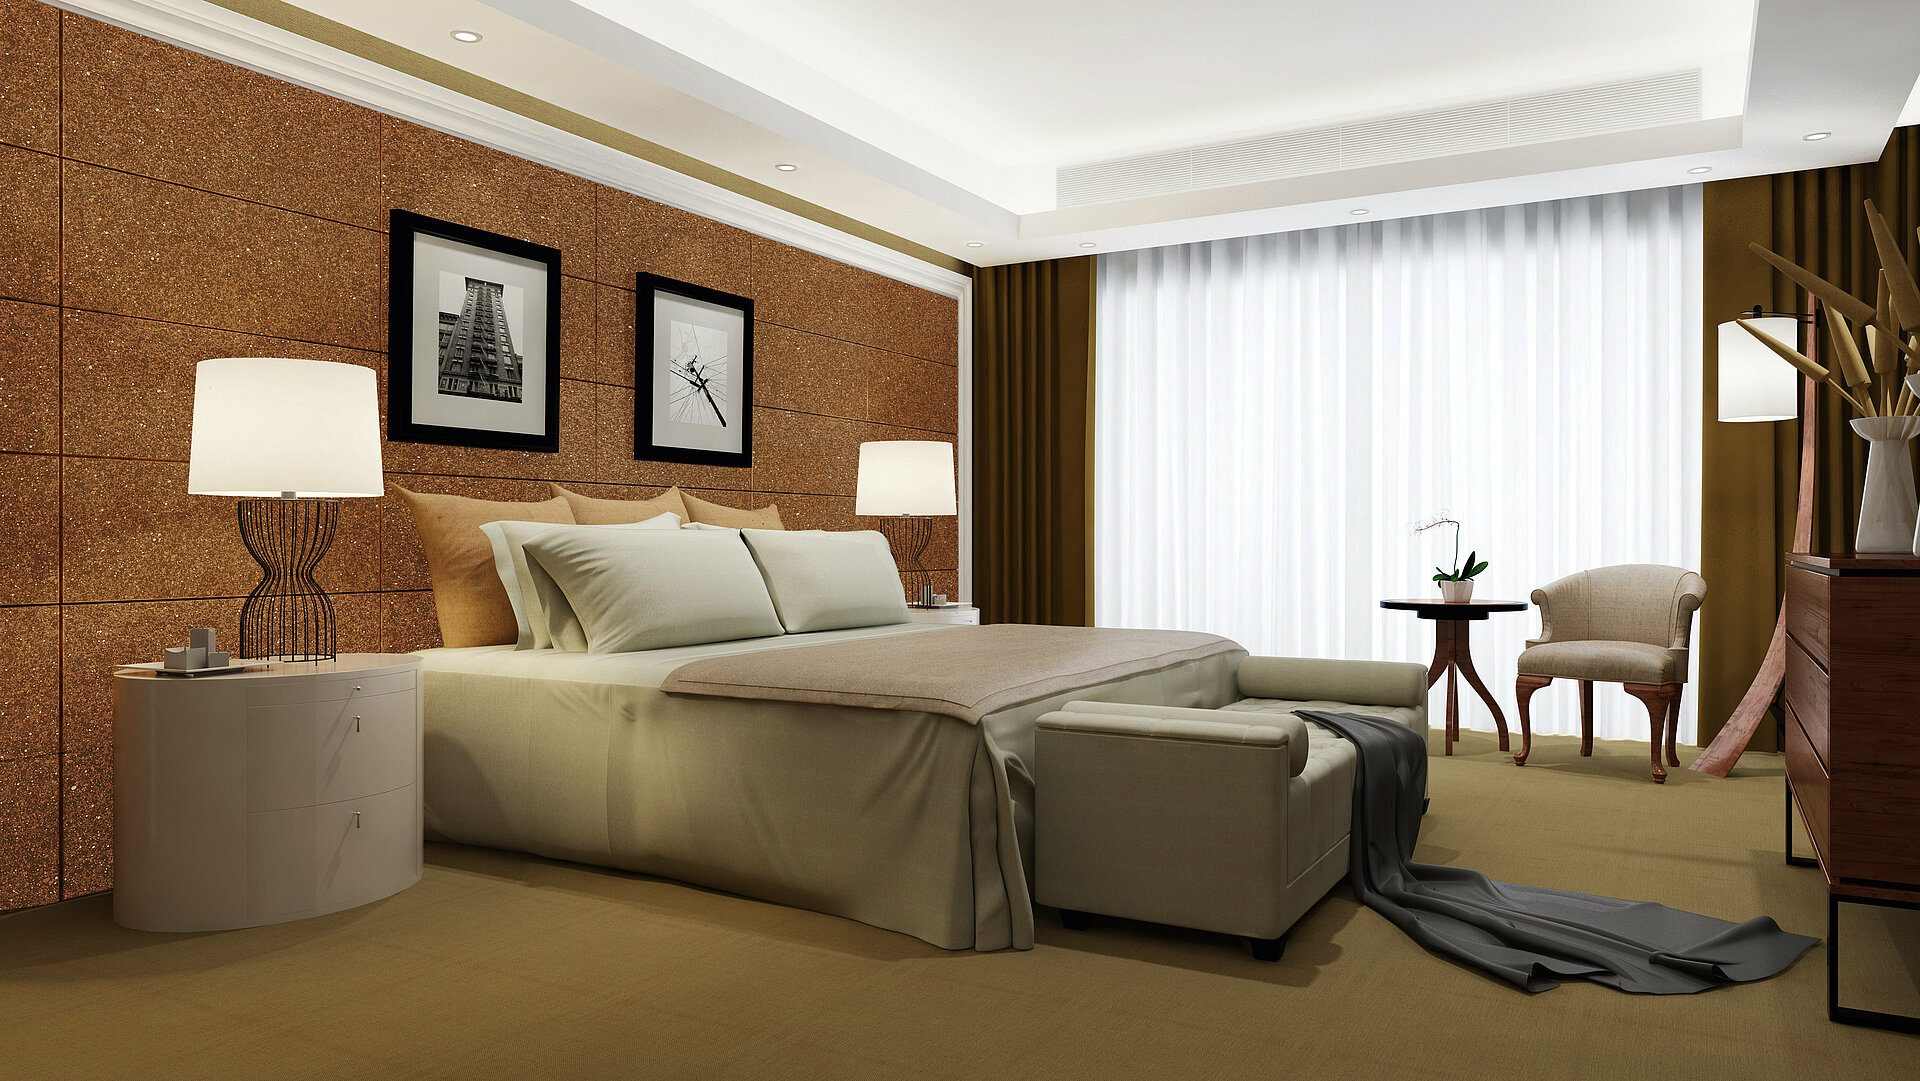 Hotelzimmer mit Wand im Effekt Wüstenoptik